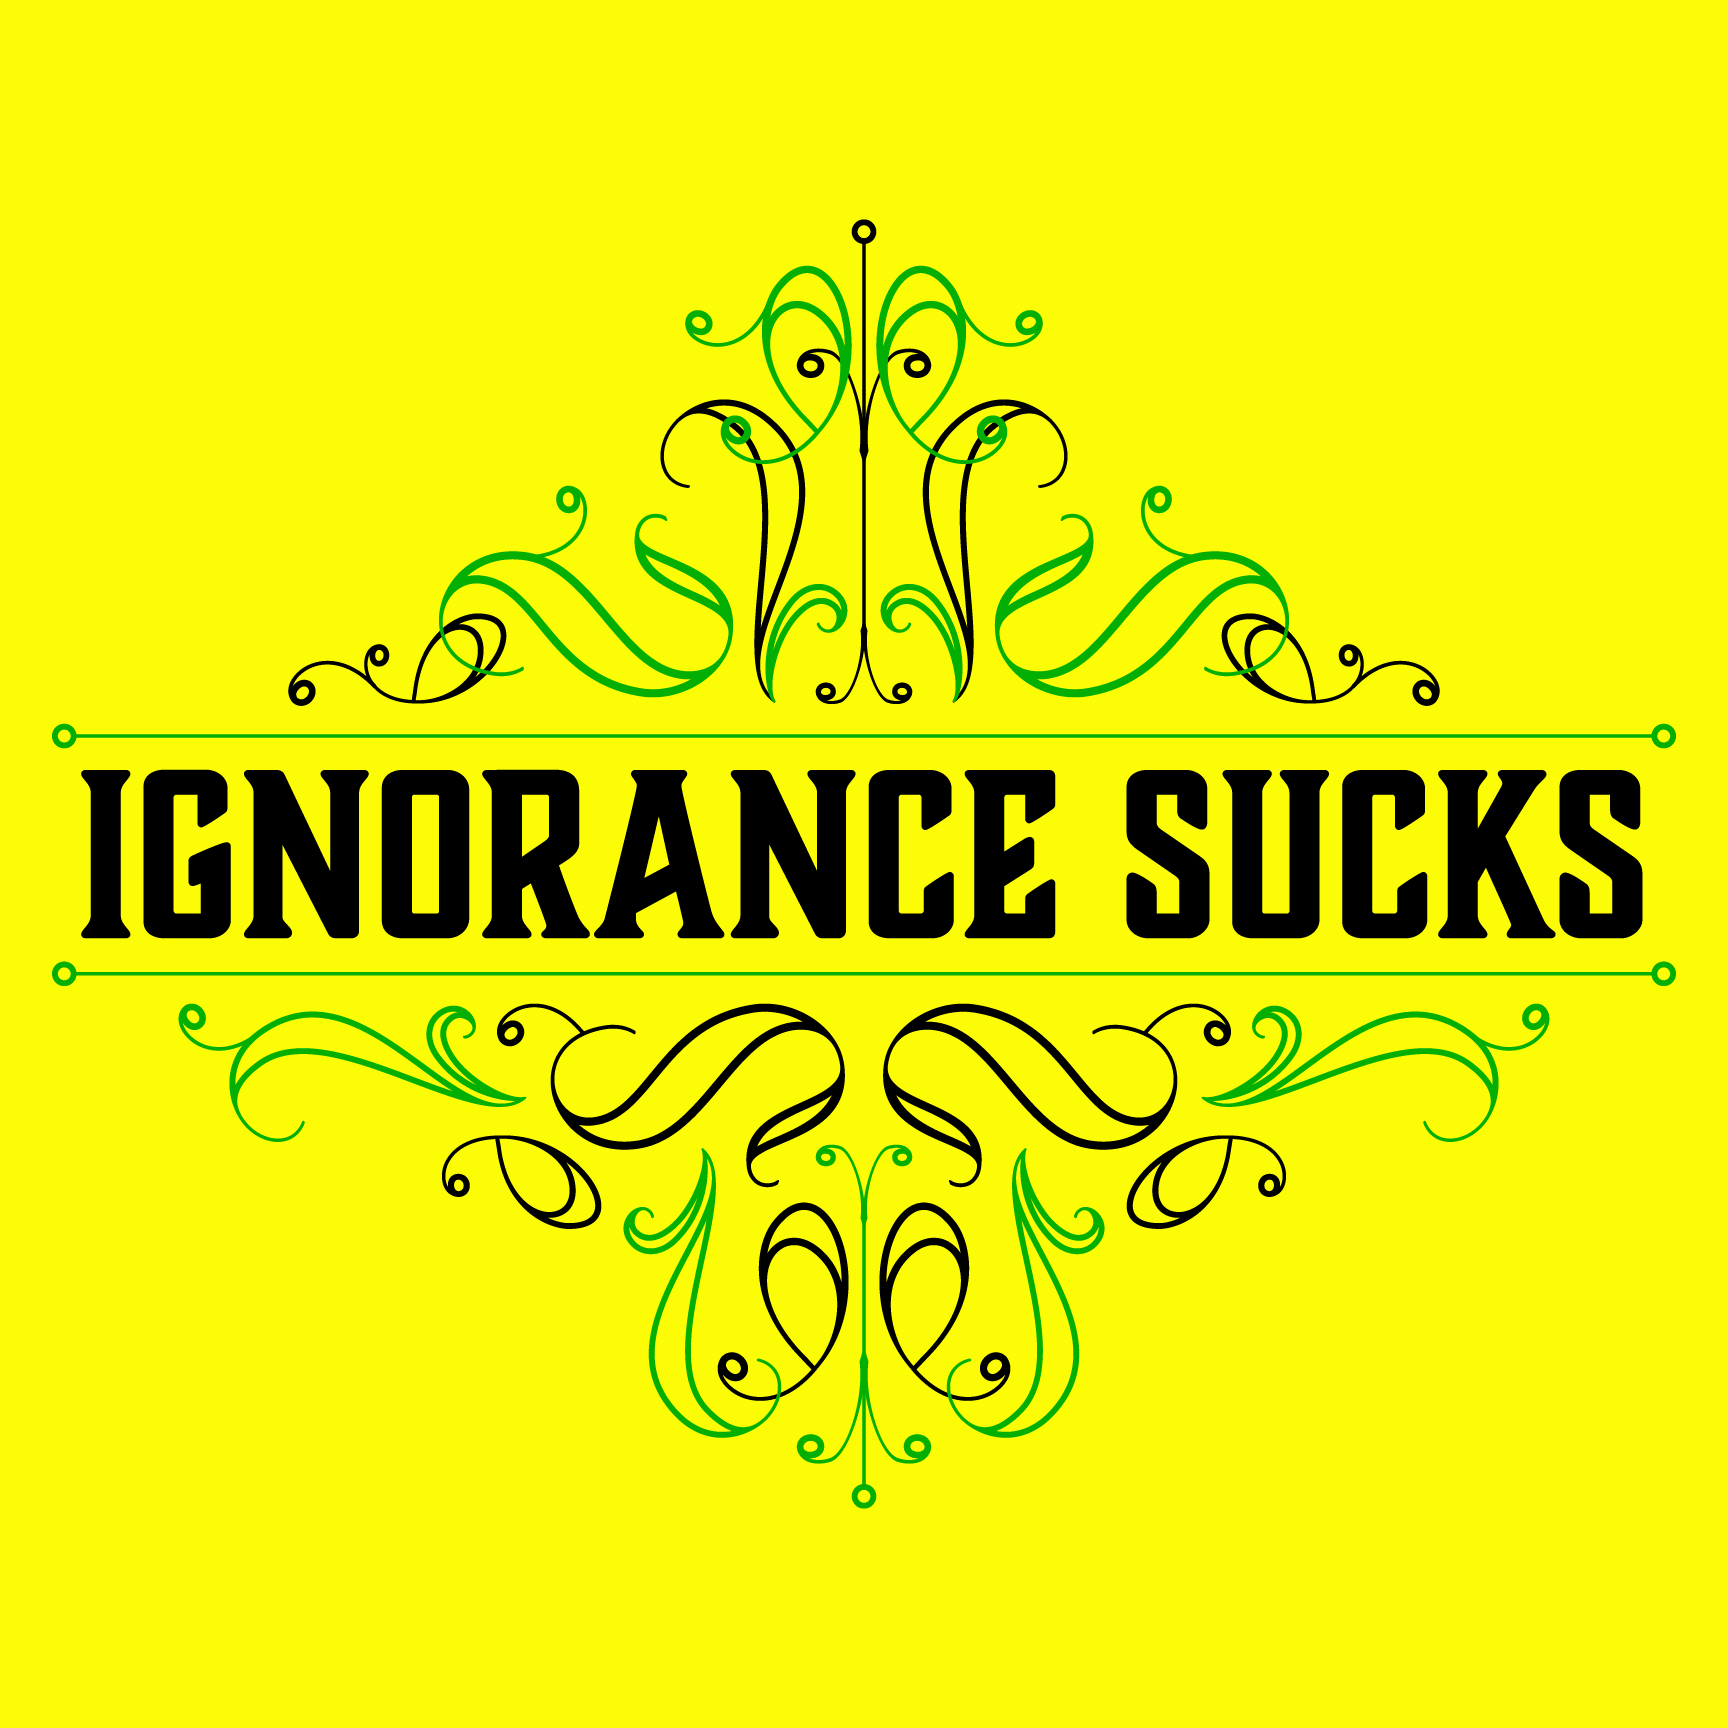 IgnoranceSucks_LT_promo.png